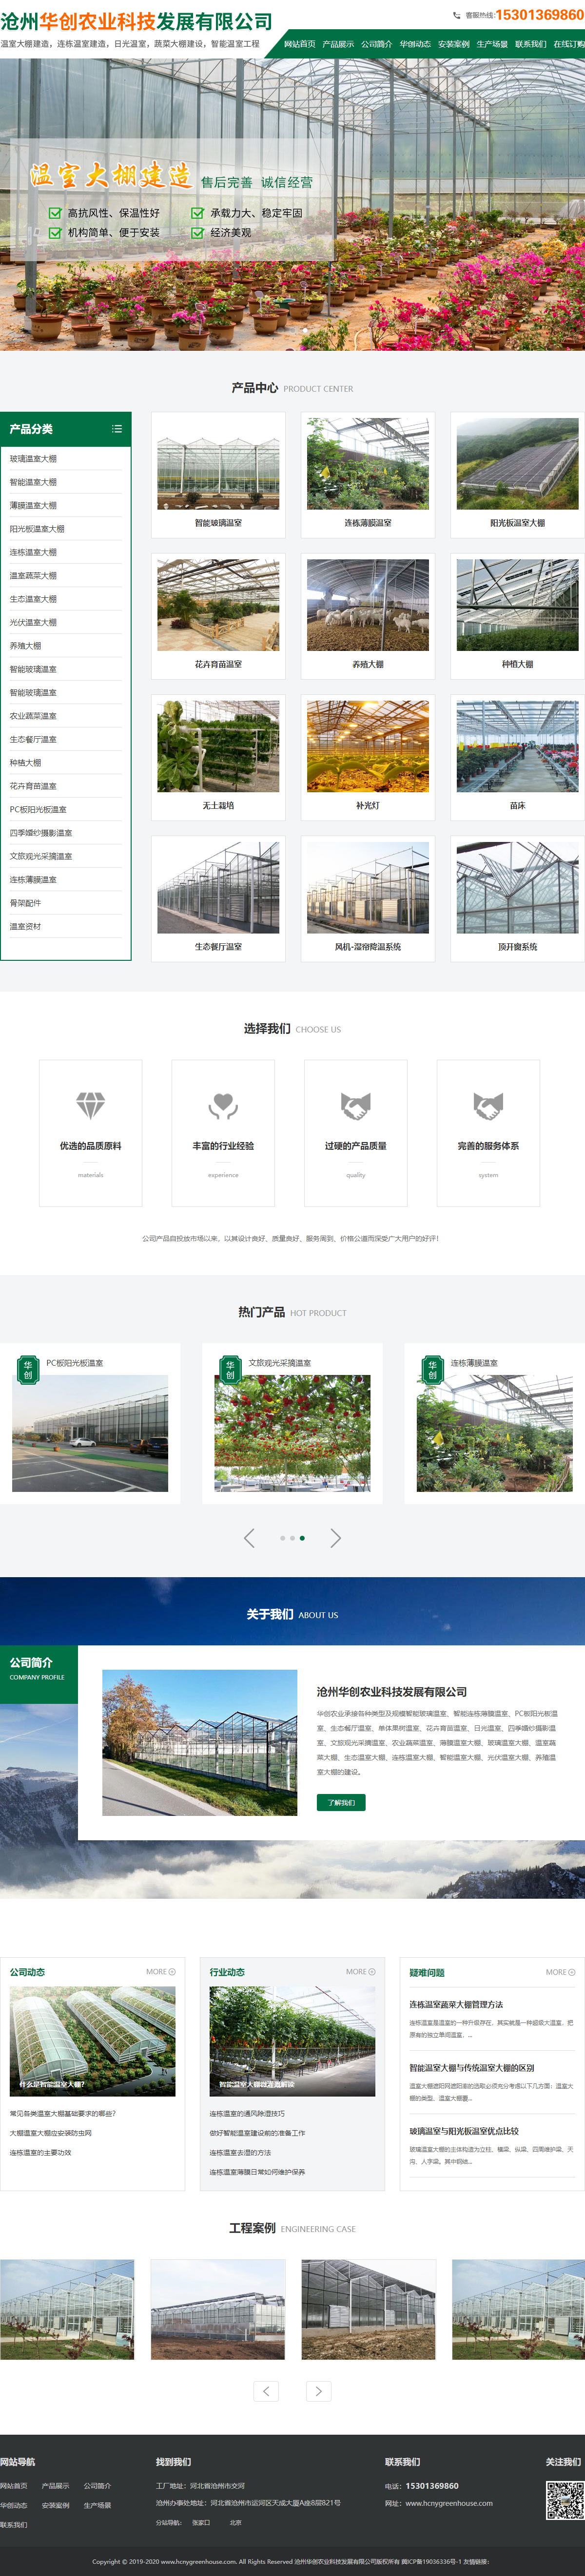 沧州华创农业科技发展有限公司网站案例